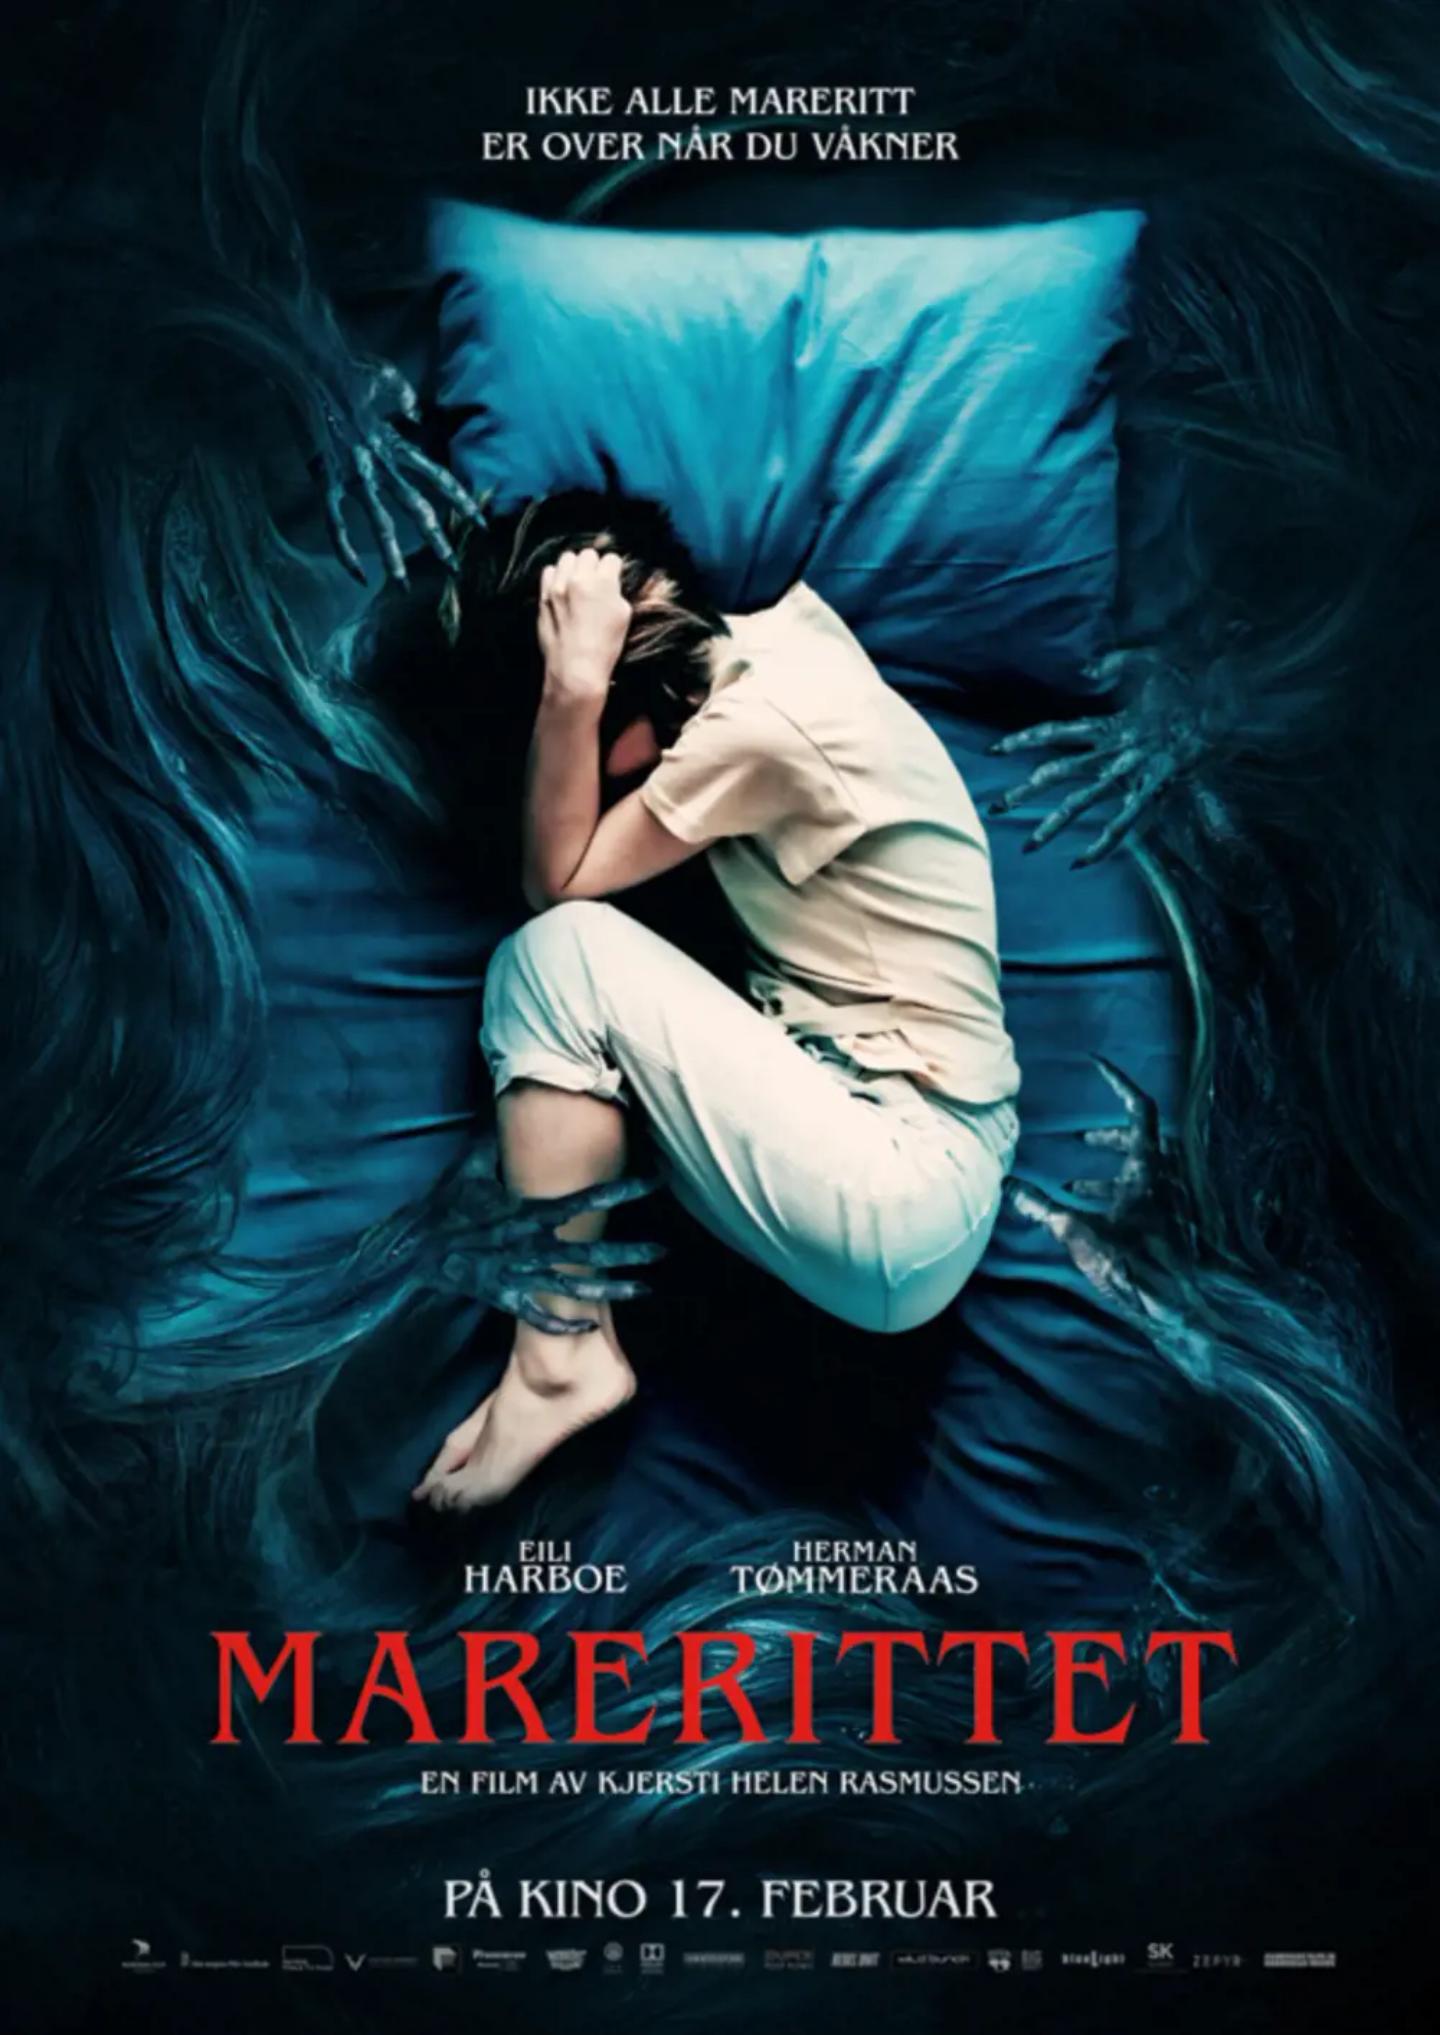 Plakat for 'Marerittet'